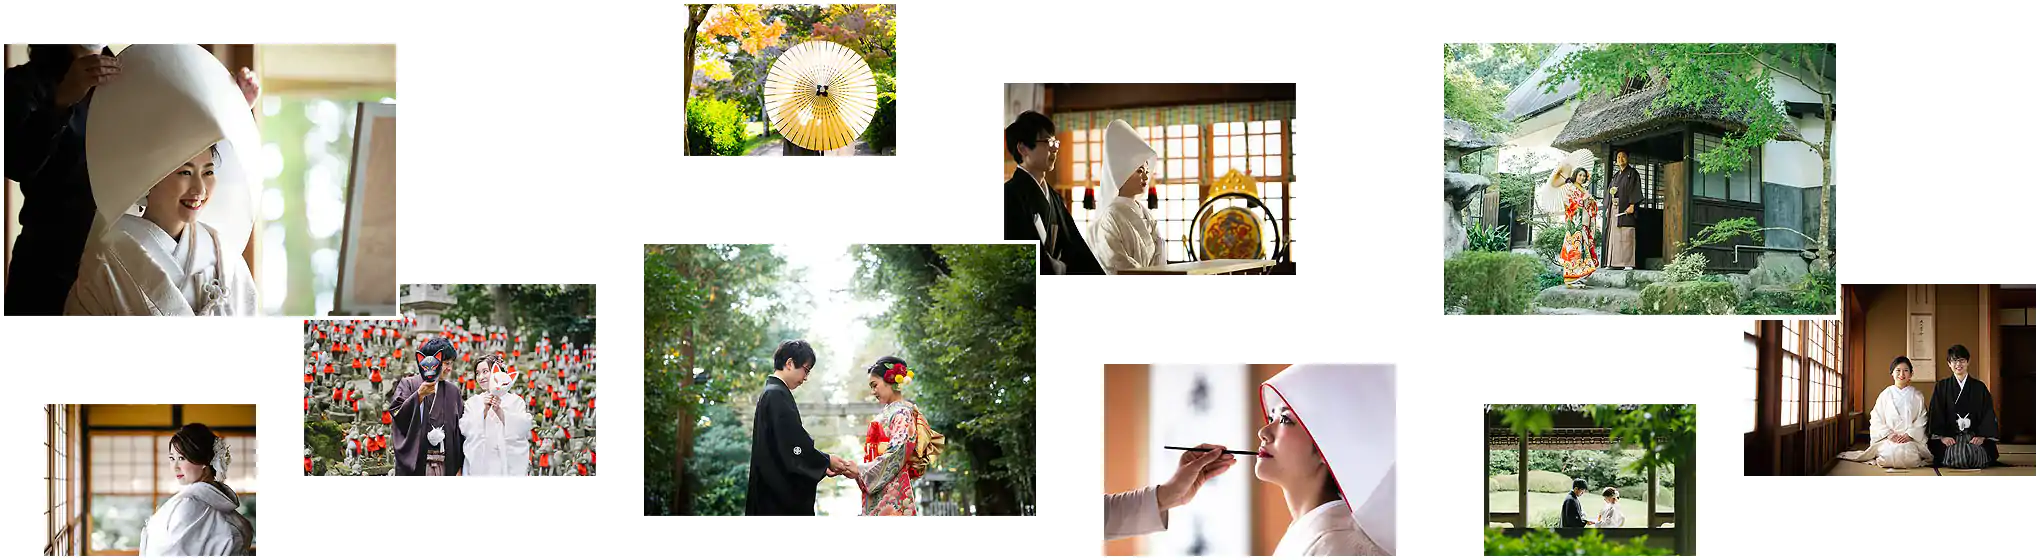 豊川 豊田 神社式 フェアリーブライダル 神社で和の結婚式